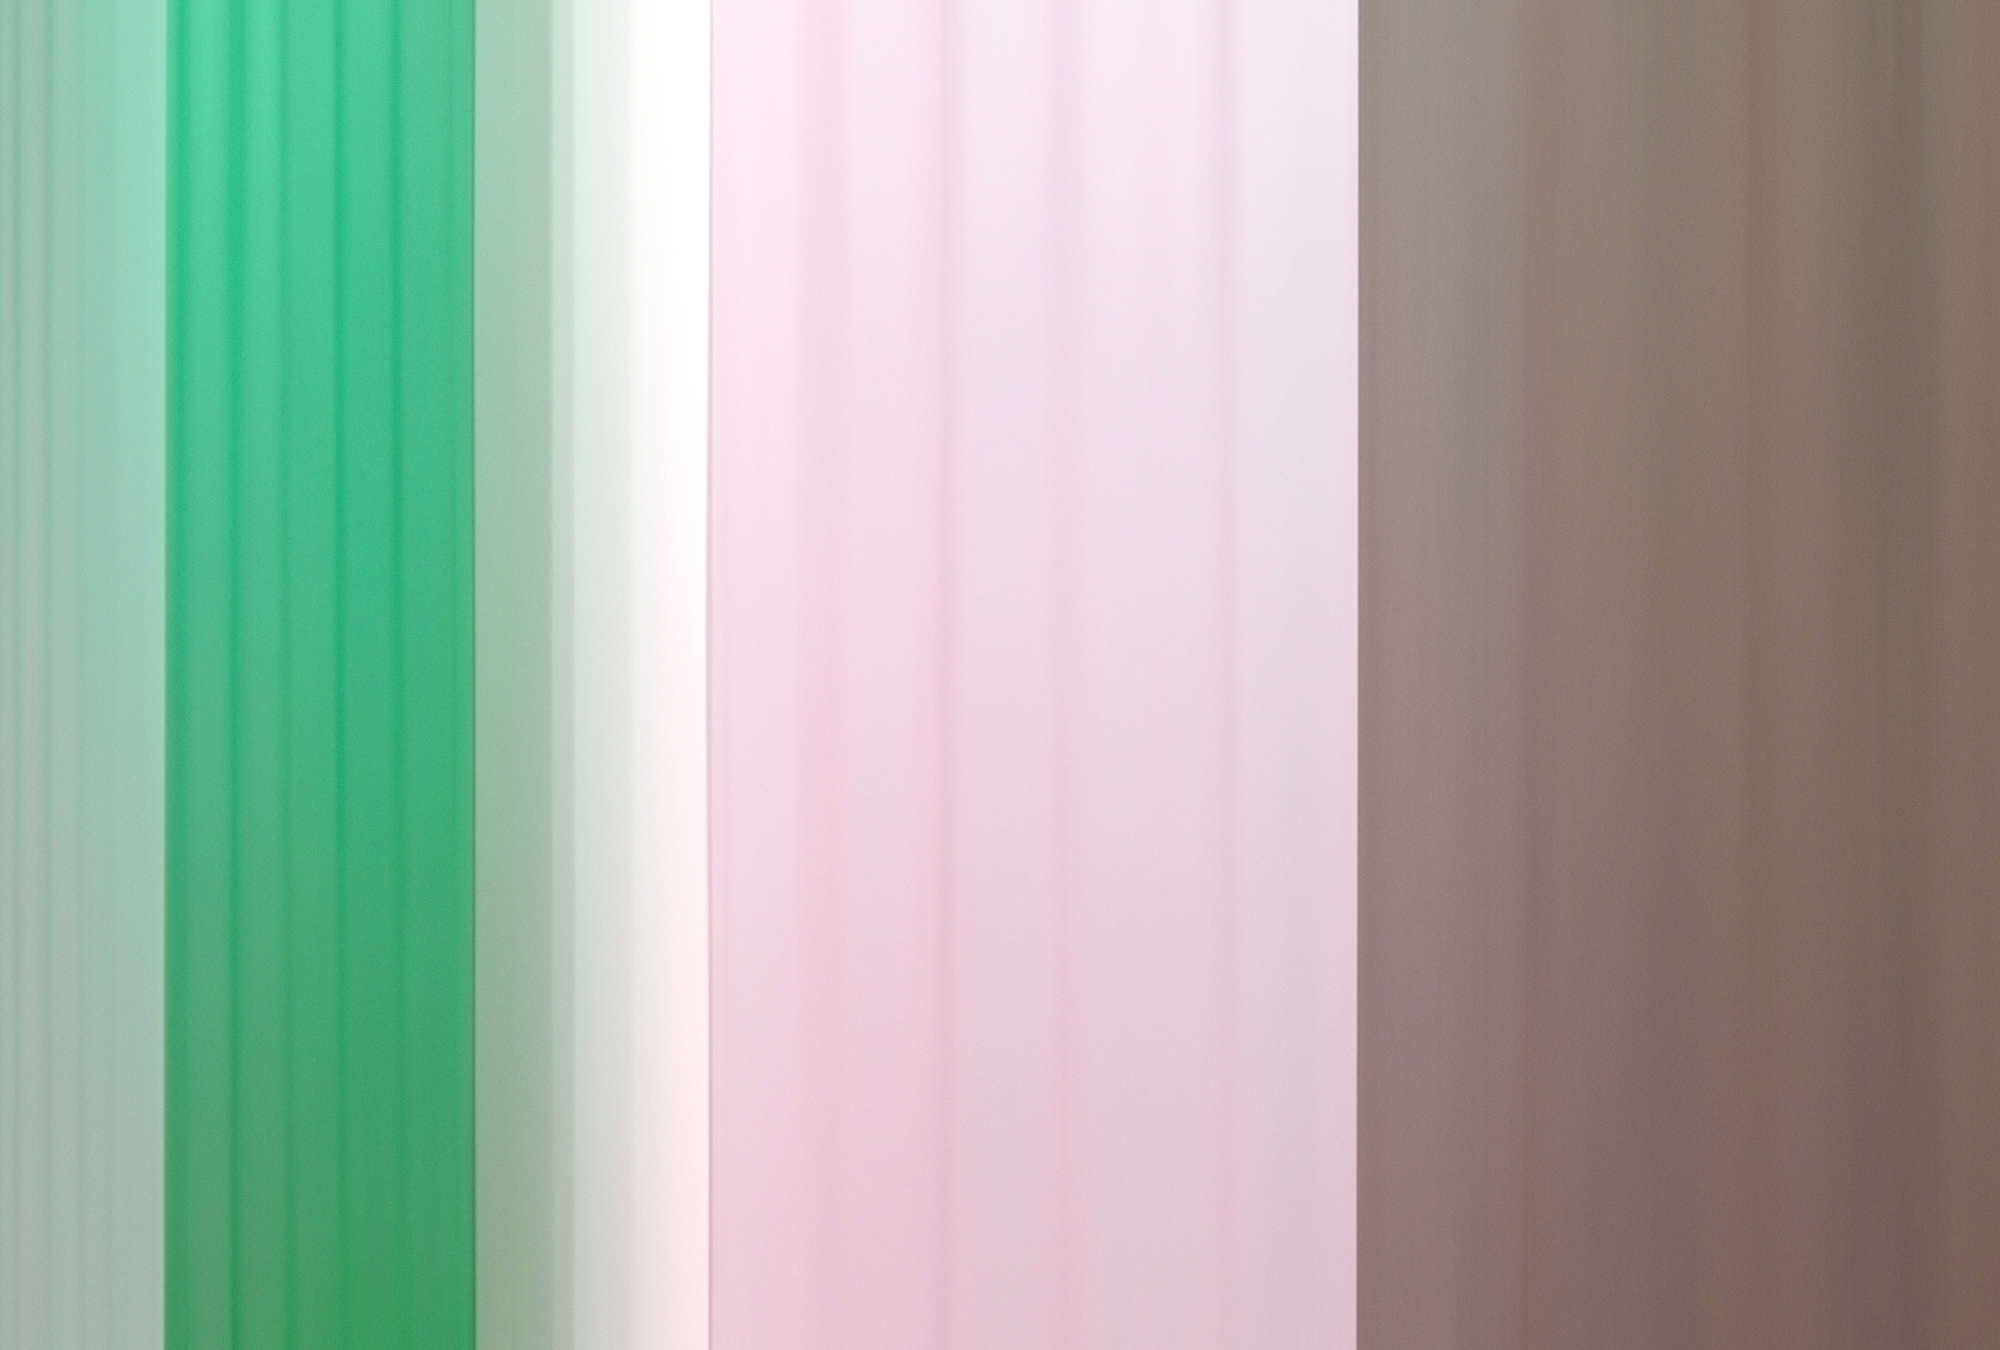             Digital behang »co-colores 1« - Kleurverloop met strepen - Groen Roze, Bruin | Gladde, licht parelmoerglanzende vliesstof
        